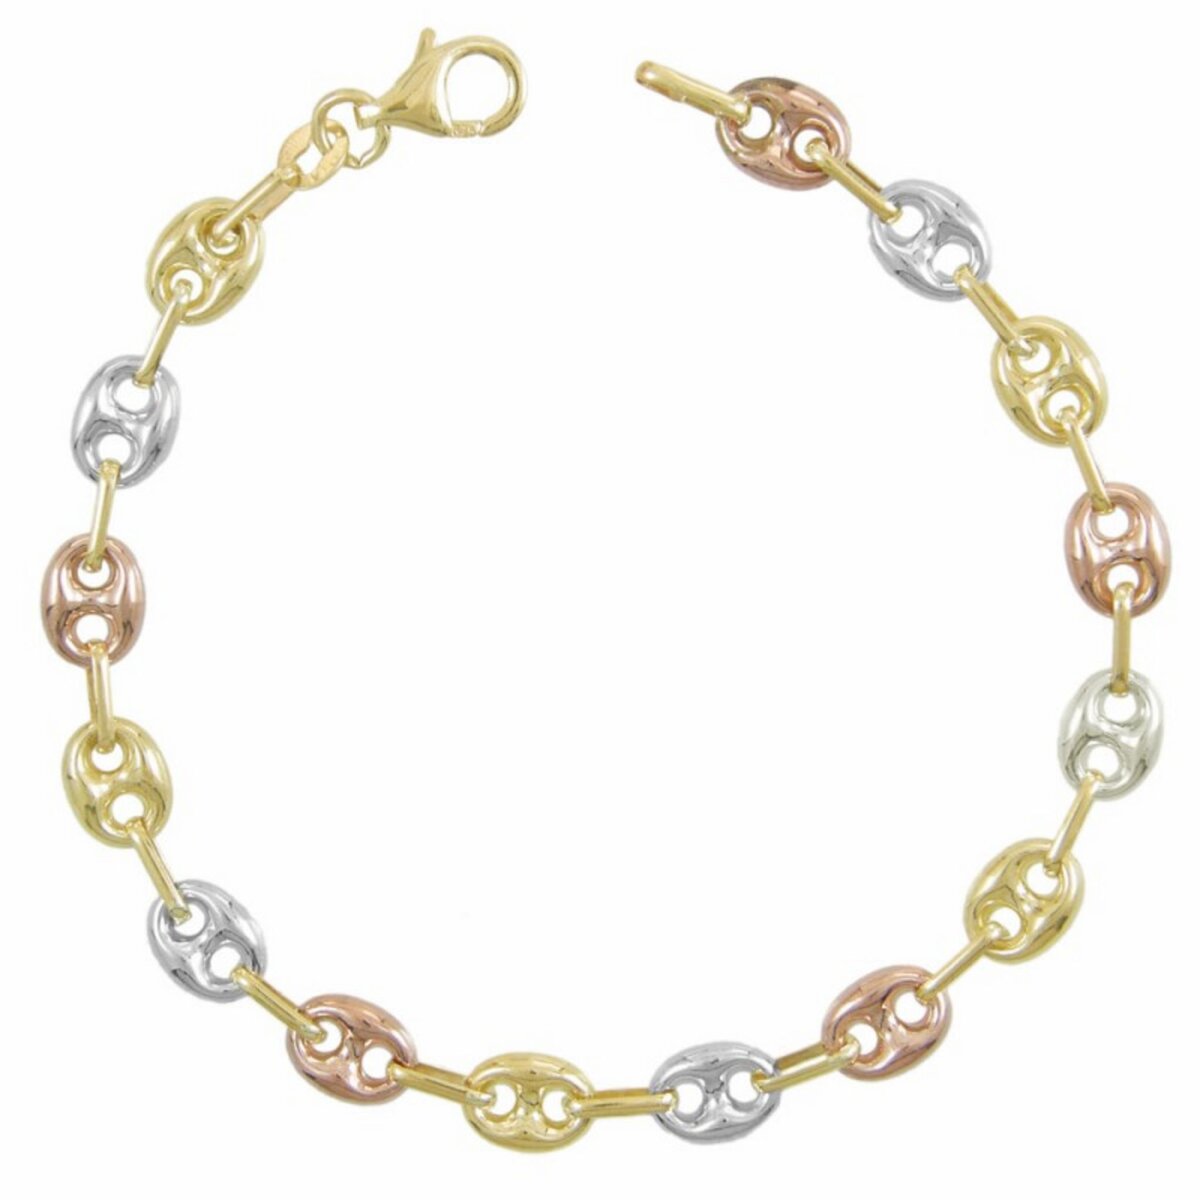 L'ATELIER D'AZUR Bracelet Femme 3 Ors - Or Tricolore - Grain de Café Jaune, Blanc et Rose